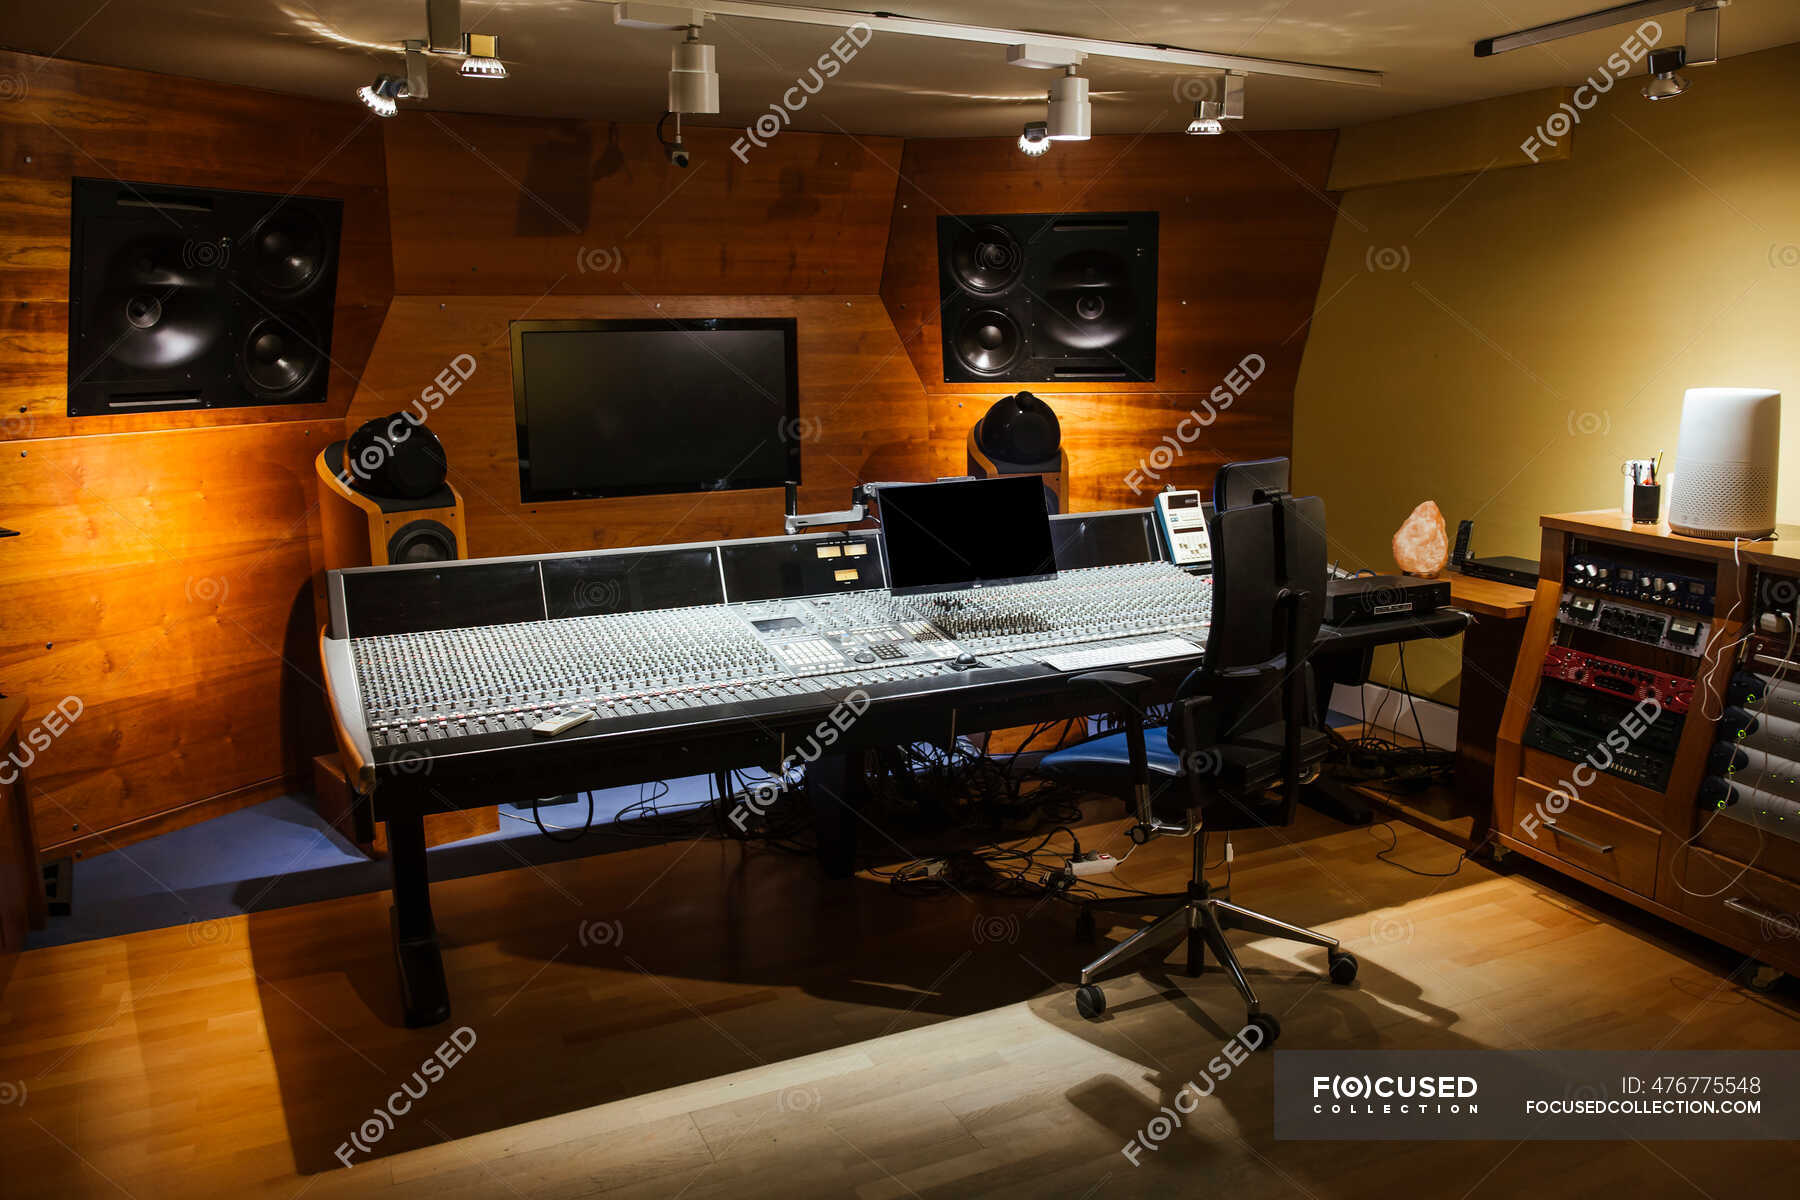 Focused 476775548 Stock Photo Recording Studio Interior Design 